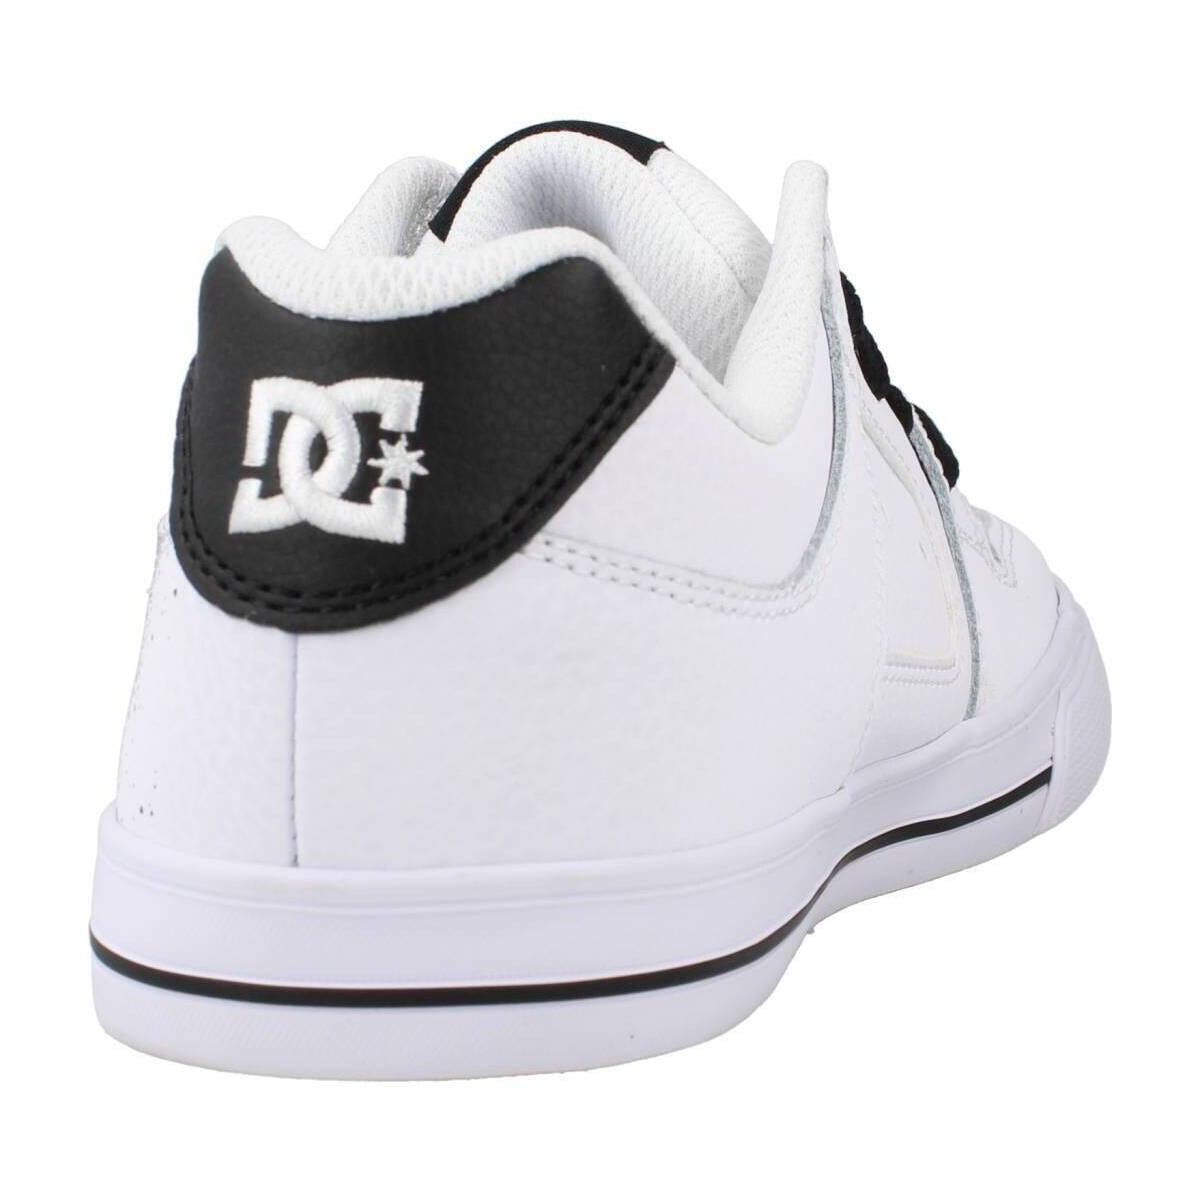 DC Shoes Blanc PURE SE 5bjnOJu0